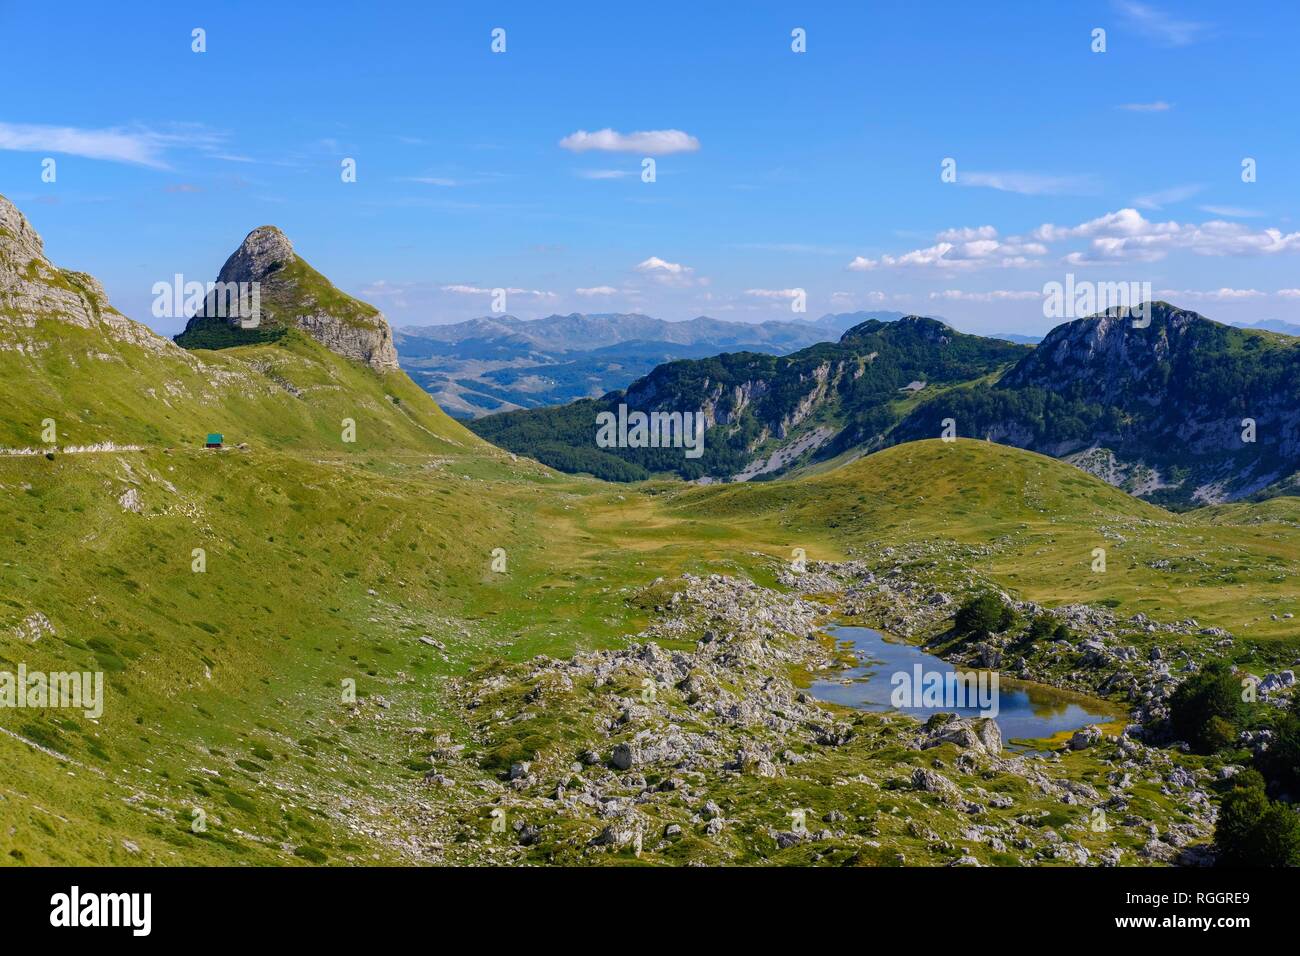 Stozina la montagne et lac Valovito jezero, massif du Durmitor, parc national de Durmitor, près de Zabljak, Montenegro Banque D'Images